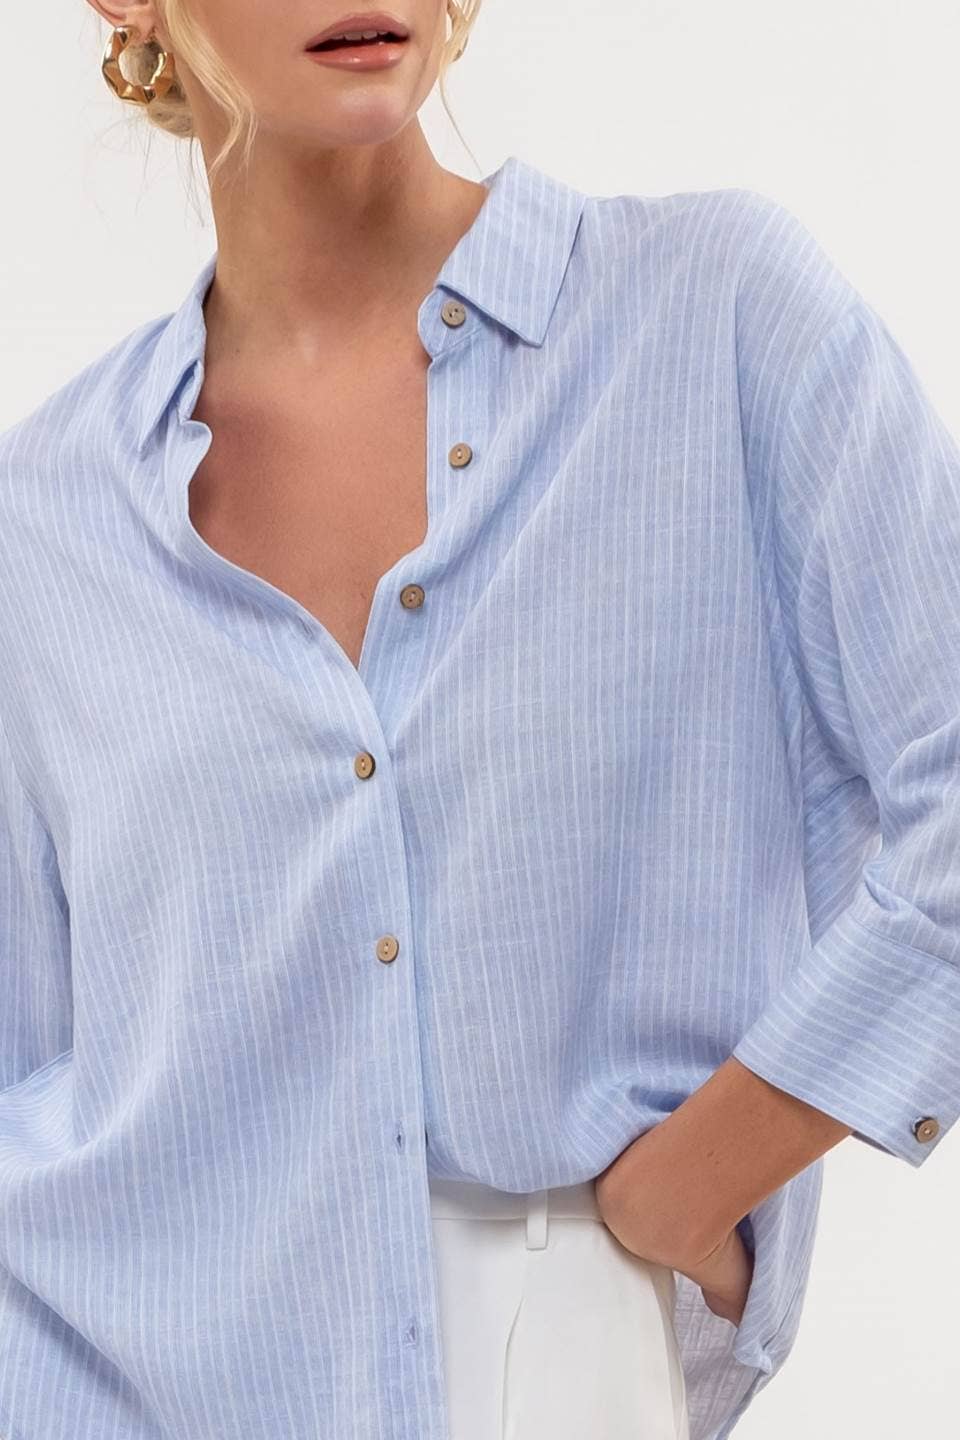 Lovely Linen (Blue) Stripe Button Shirt